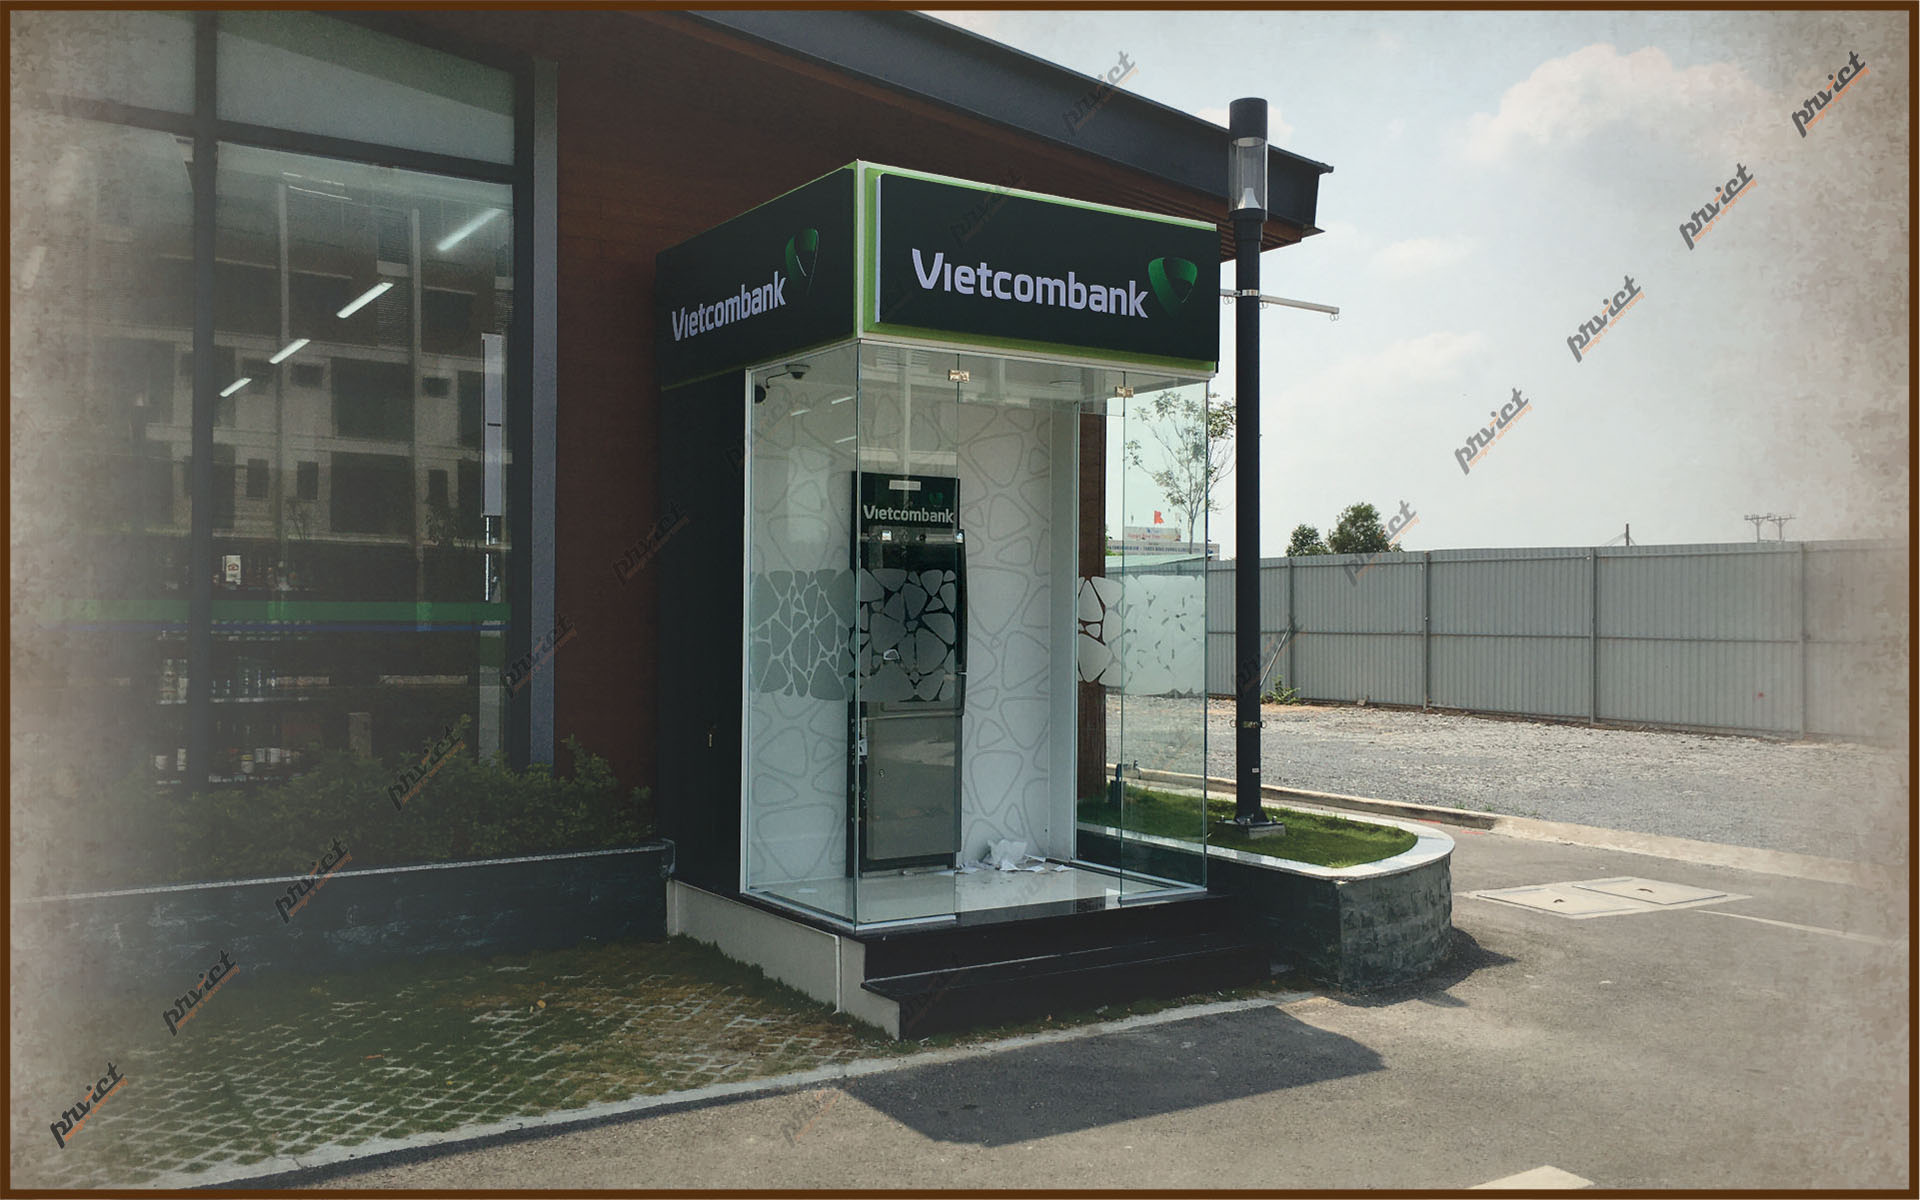 Thiết kế thi công phòng máy ATM Vietcombank